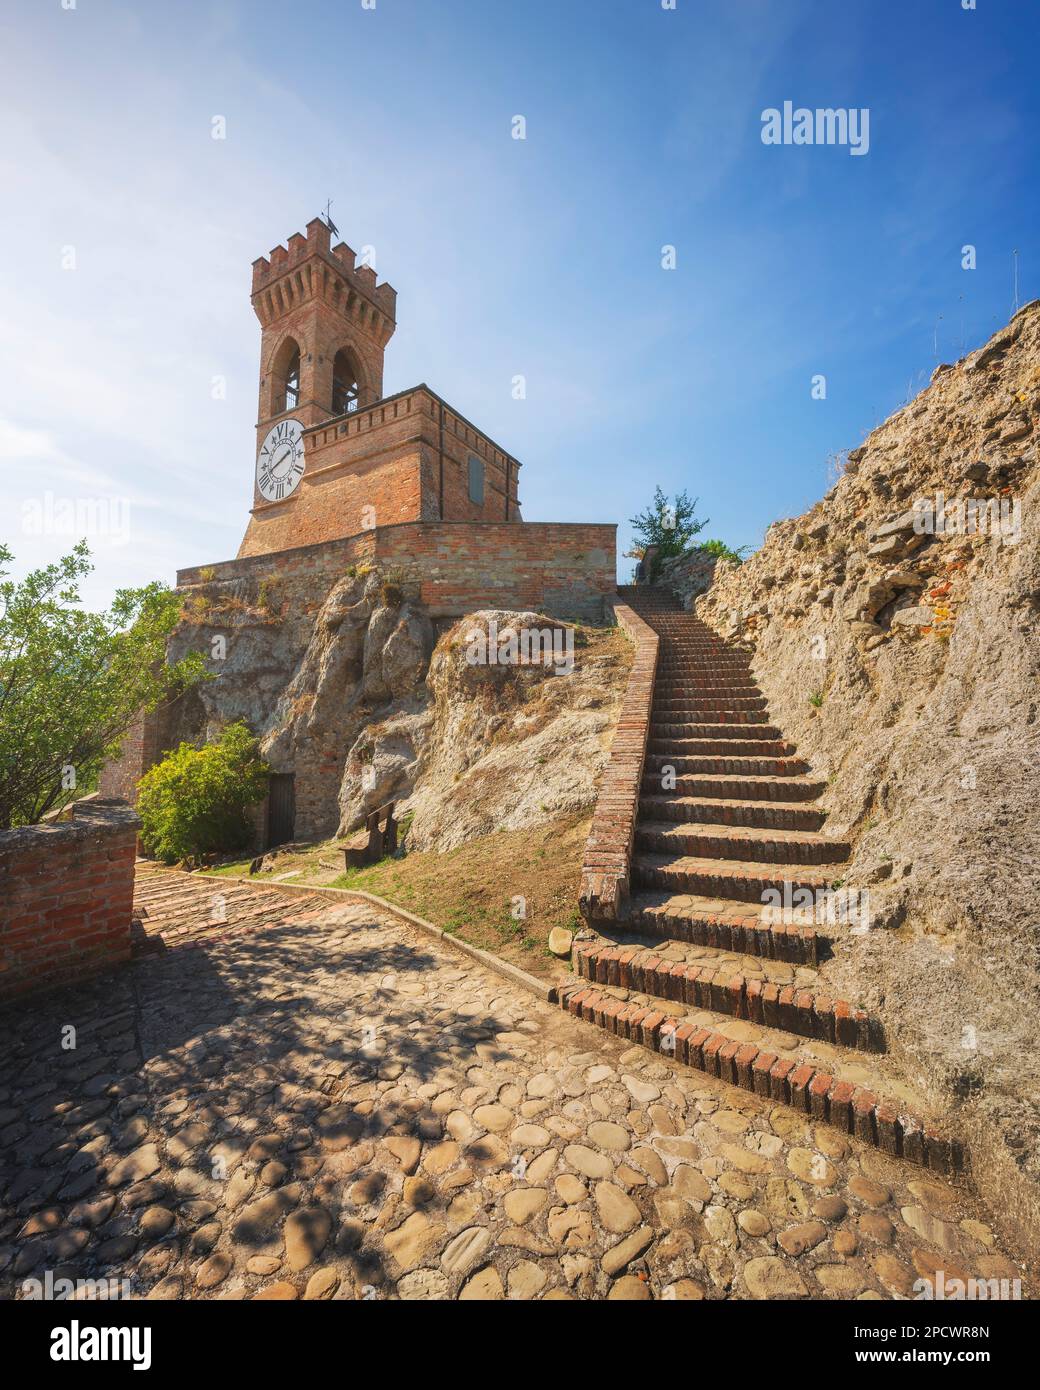 Escalier vers la tour historique de l'horloge de Brisighella sur les rochers. Cette architecture 1800s est connue sous le nom de Torre dell'Orologio. Province de Ravenne. Emilia Romag Banque D'Images